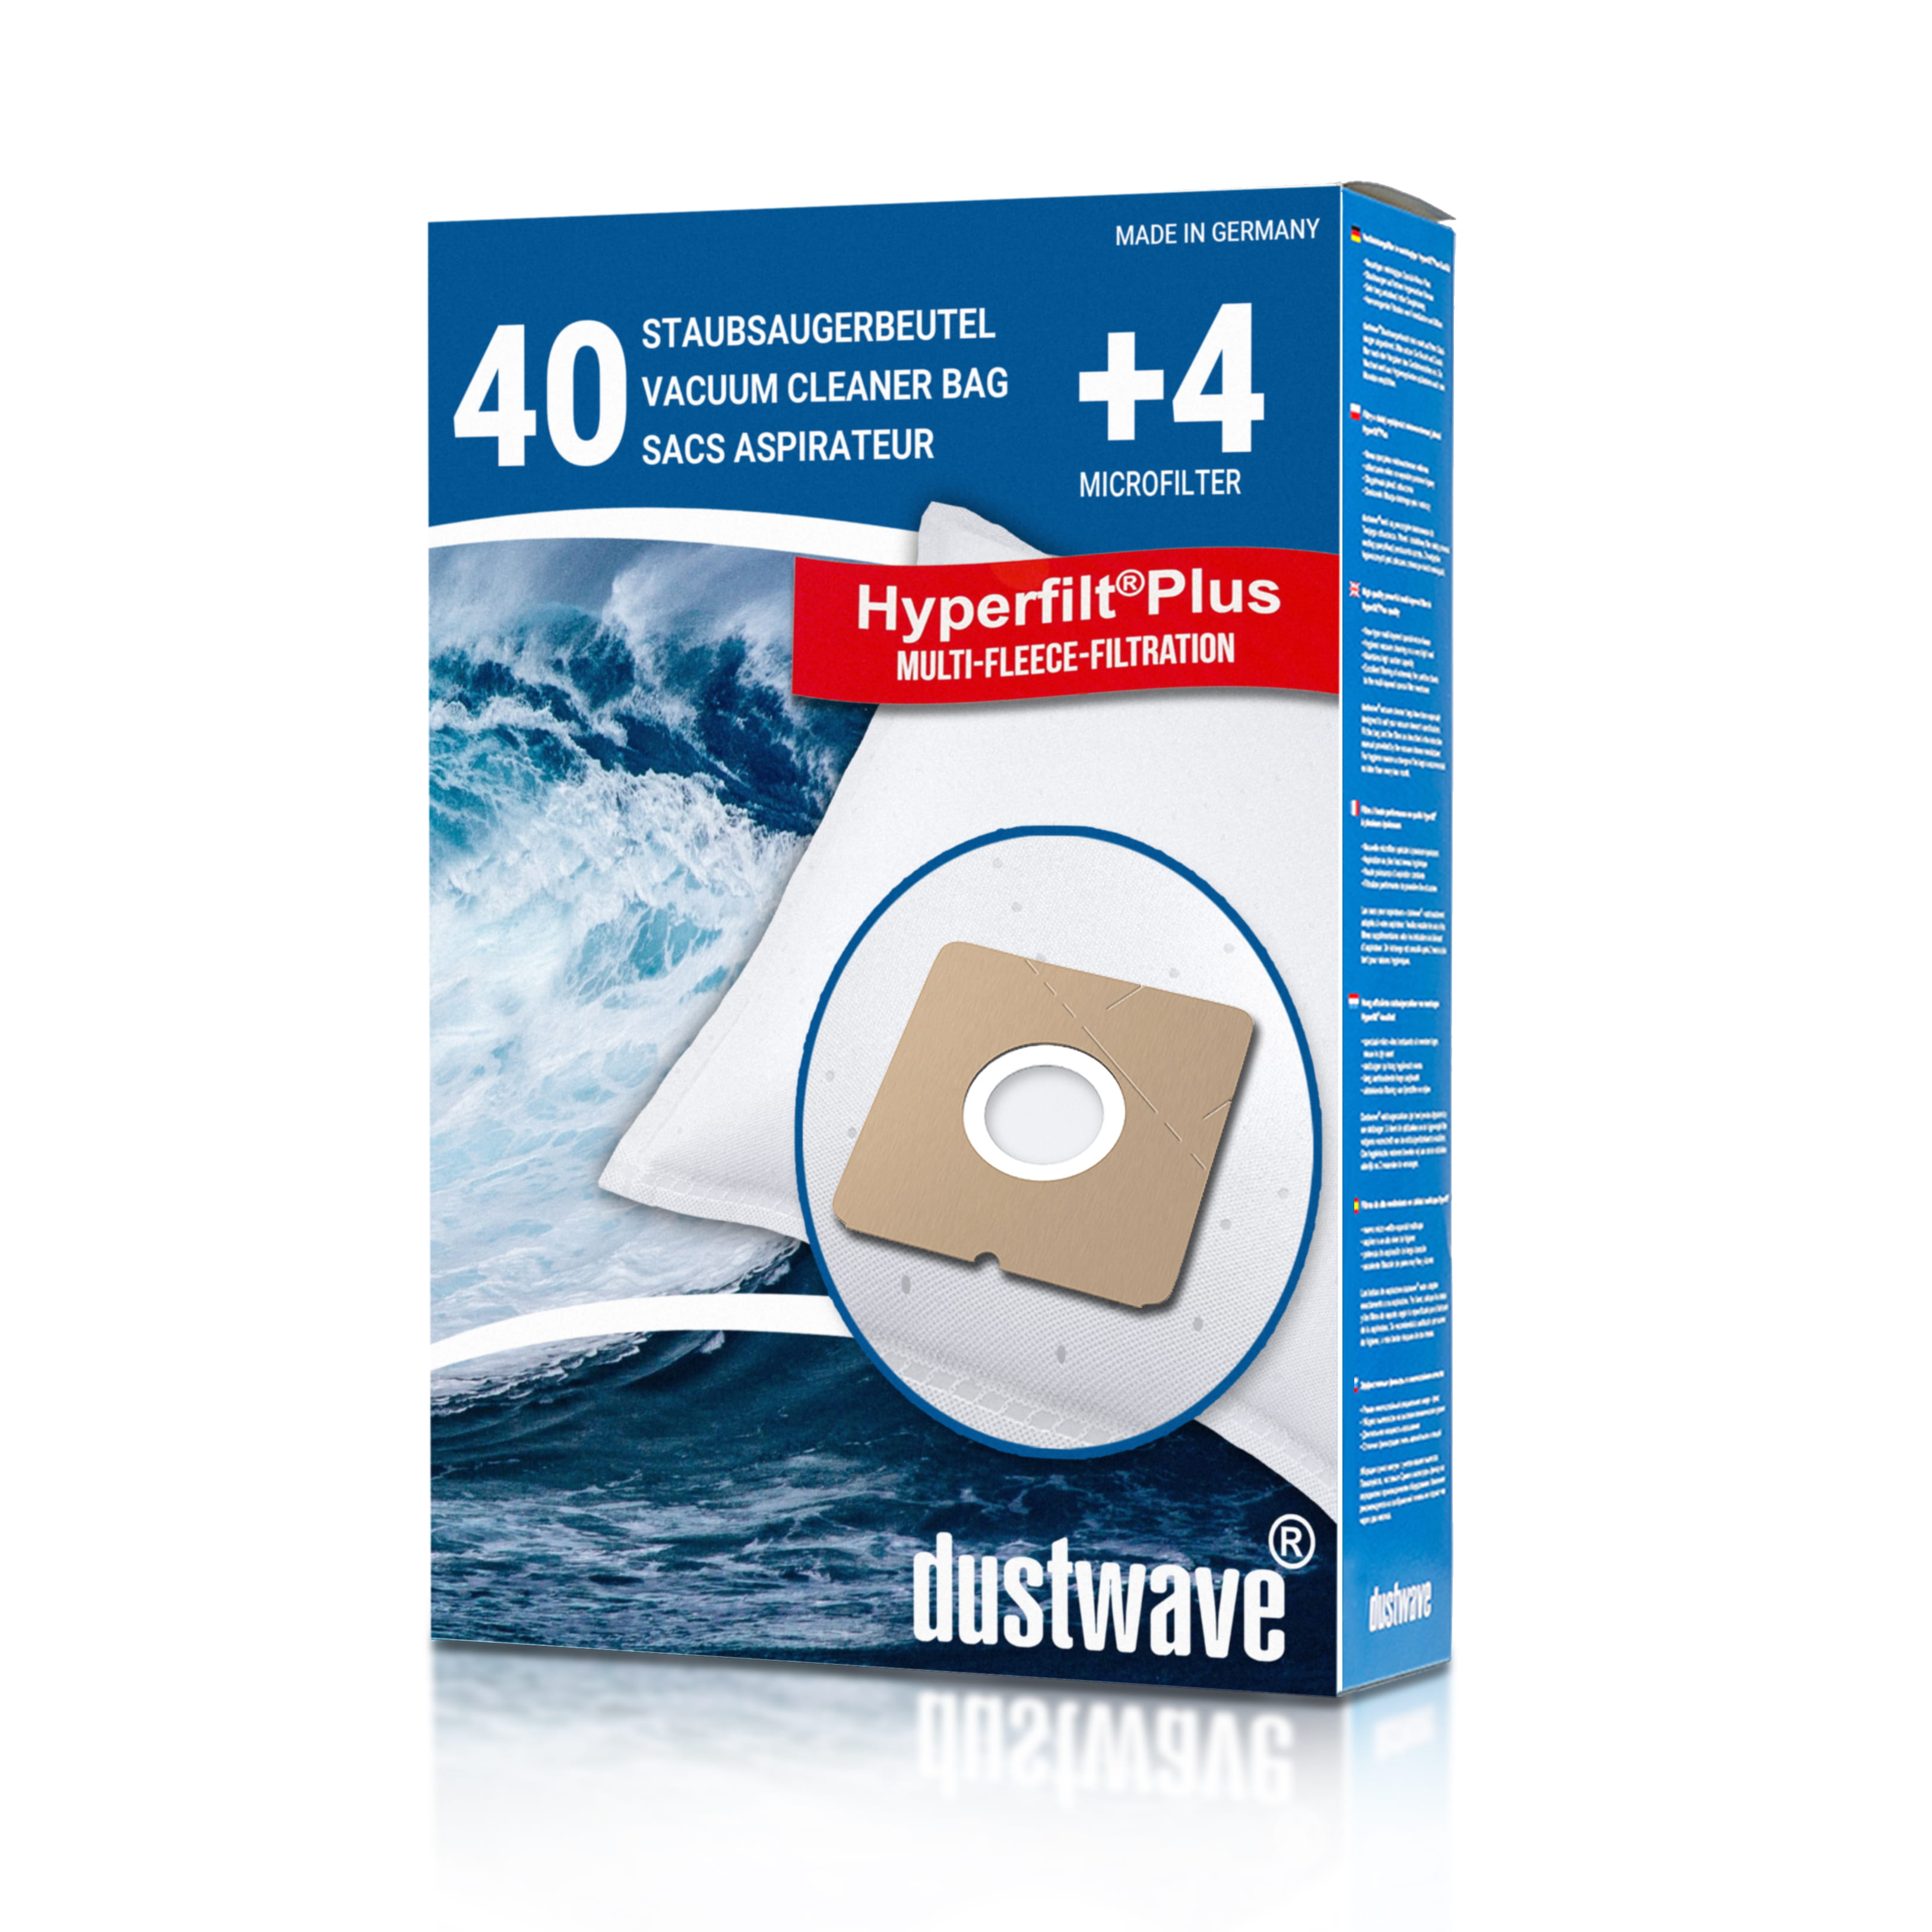 Dustwave® 40 Staubsaugerbeutel für Hoover H 55 / H55 - hocheffizient, mehrlagiges Mikrovlies mit Hygieneverschluss - Made in Germany